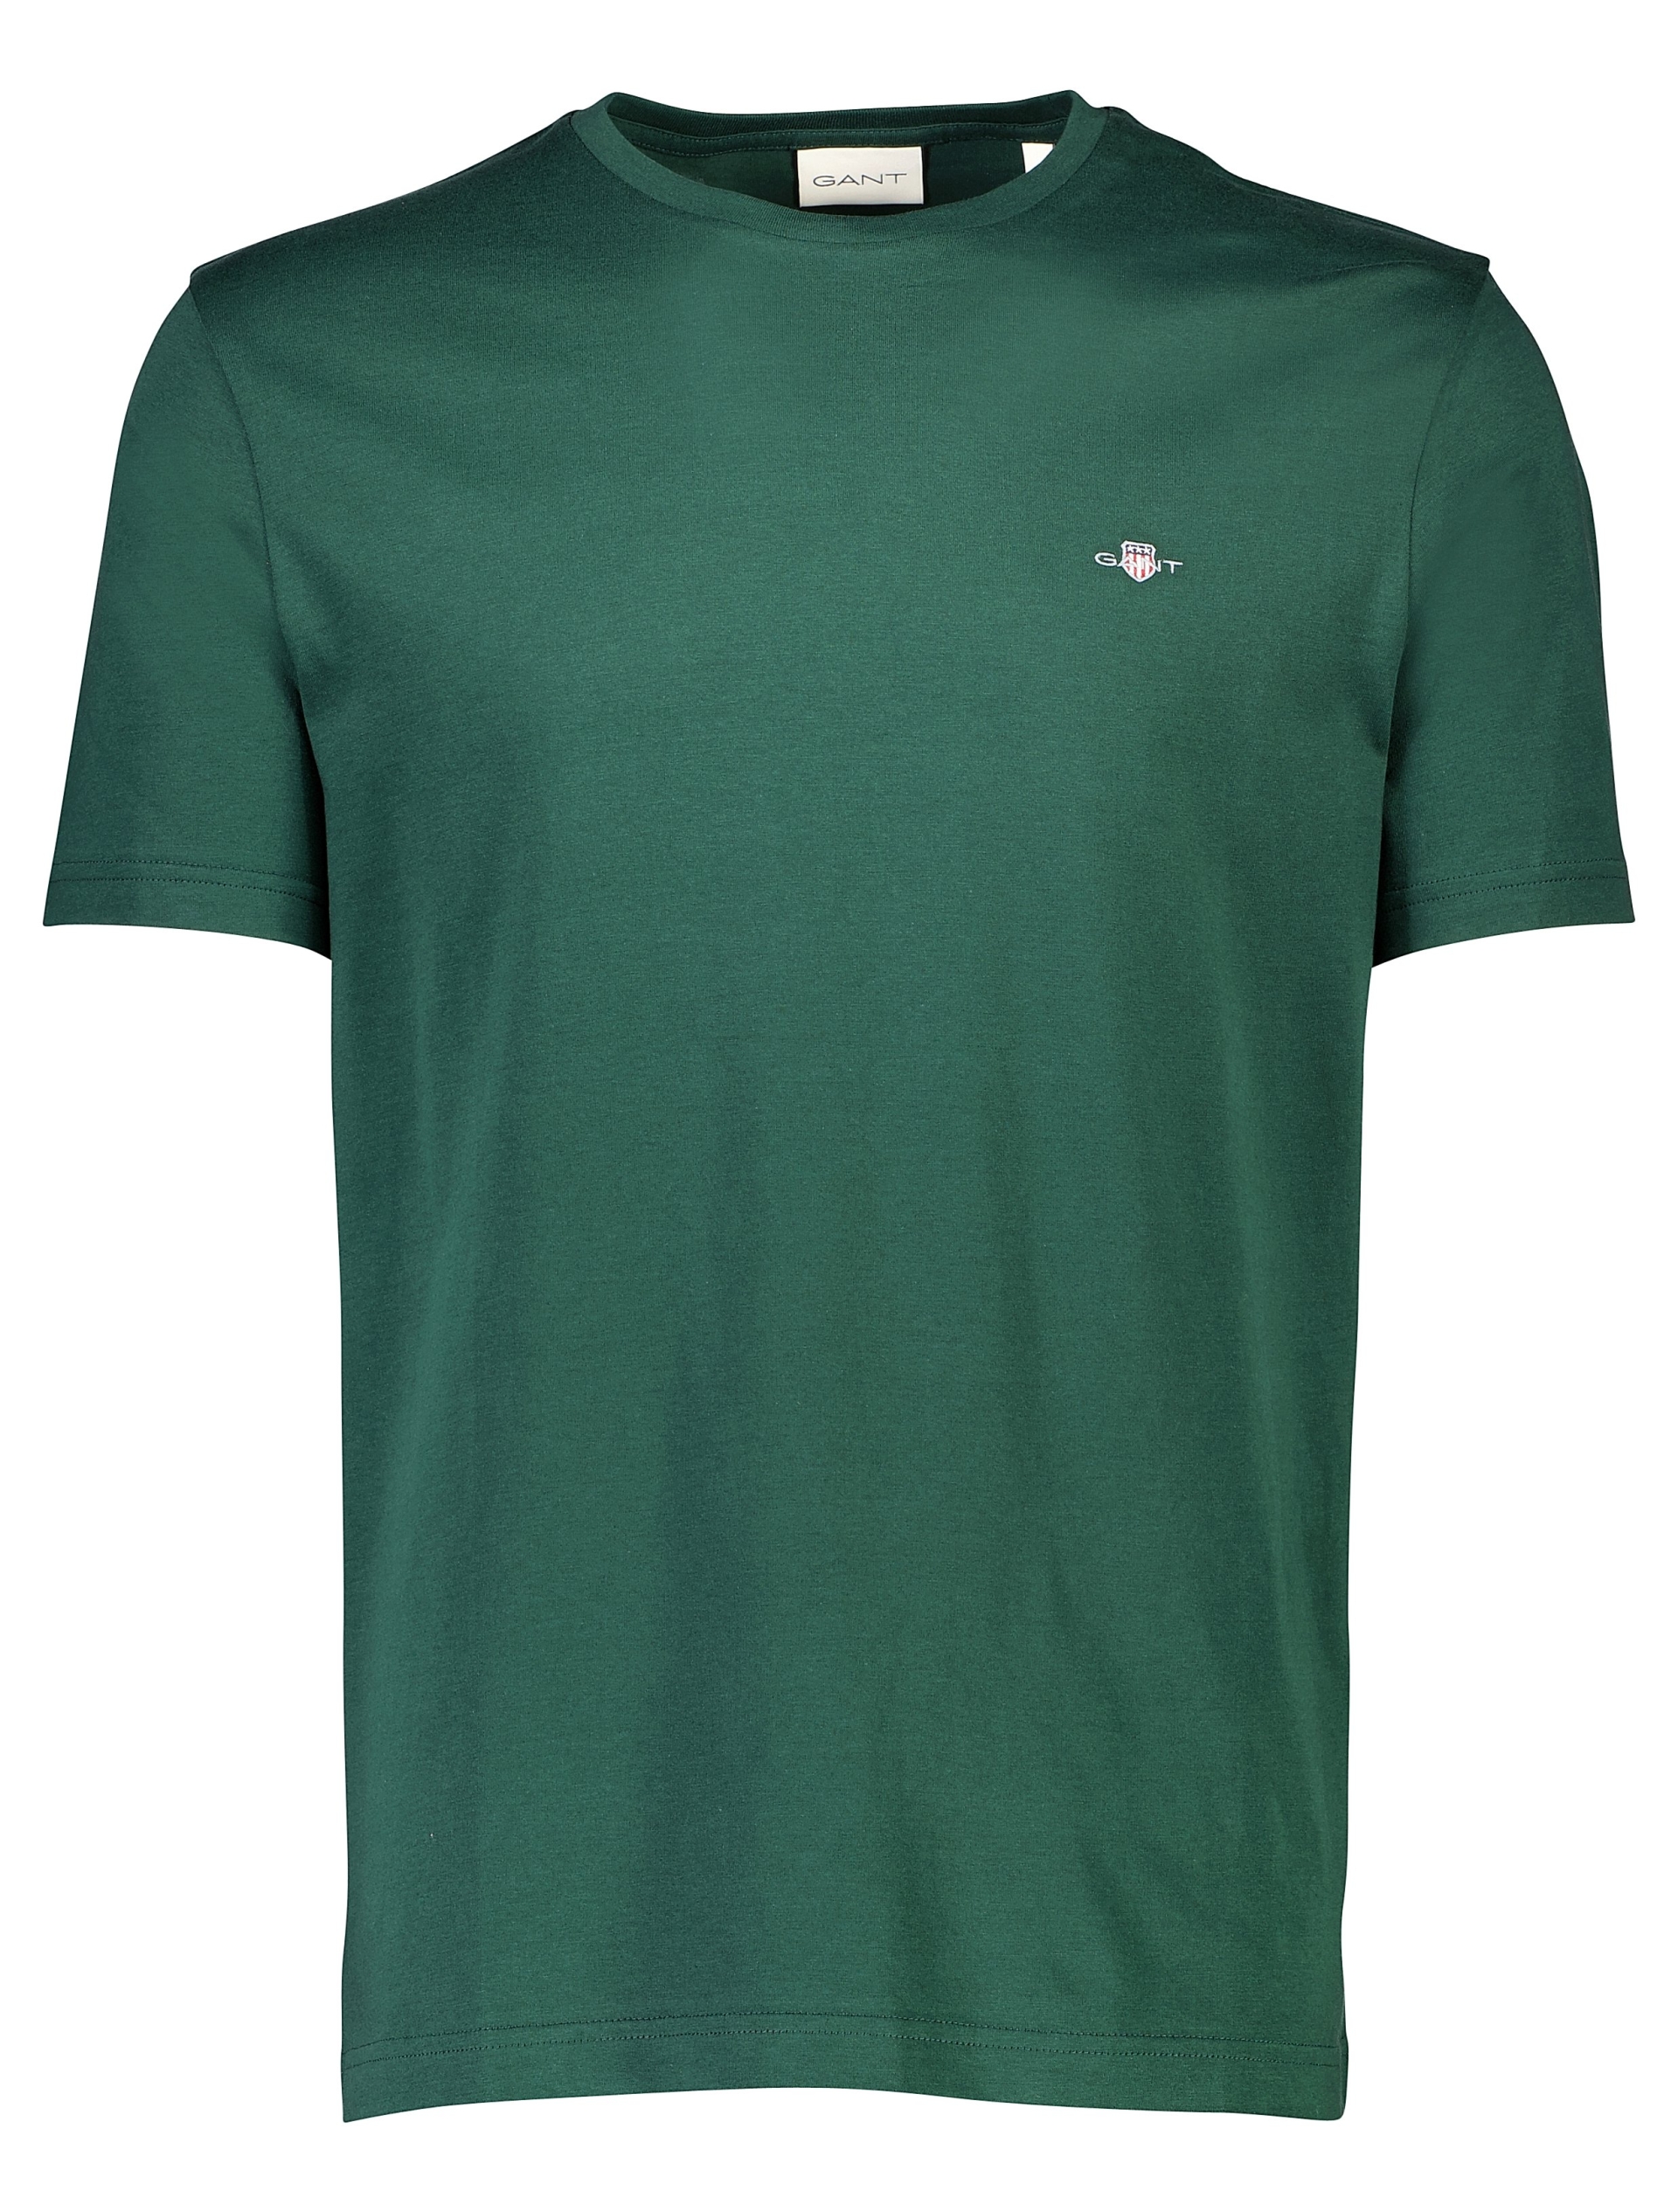 Gant T-shirt grøn / 374 tartan green